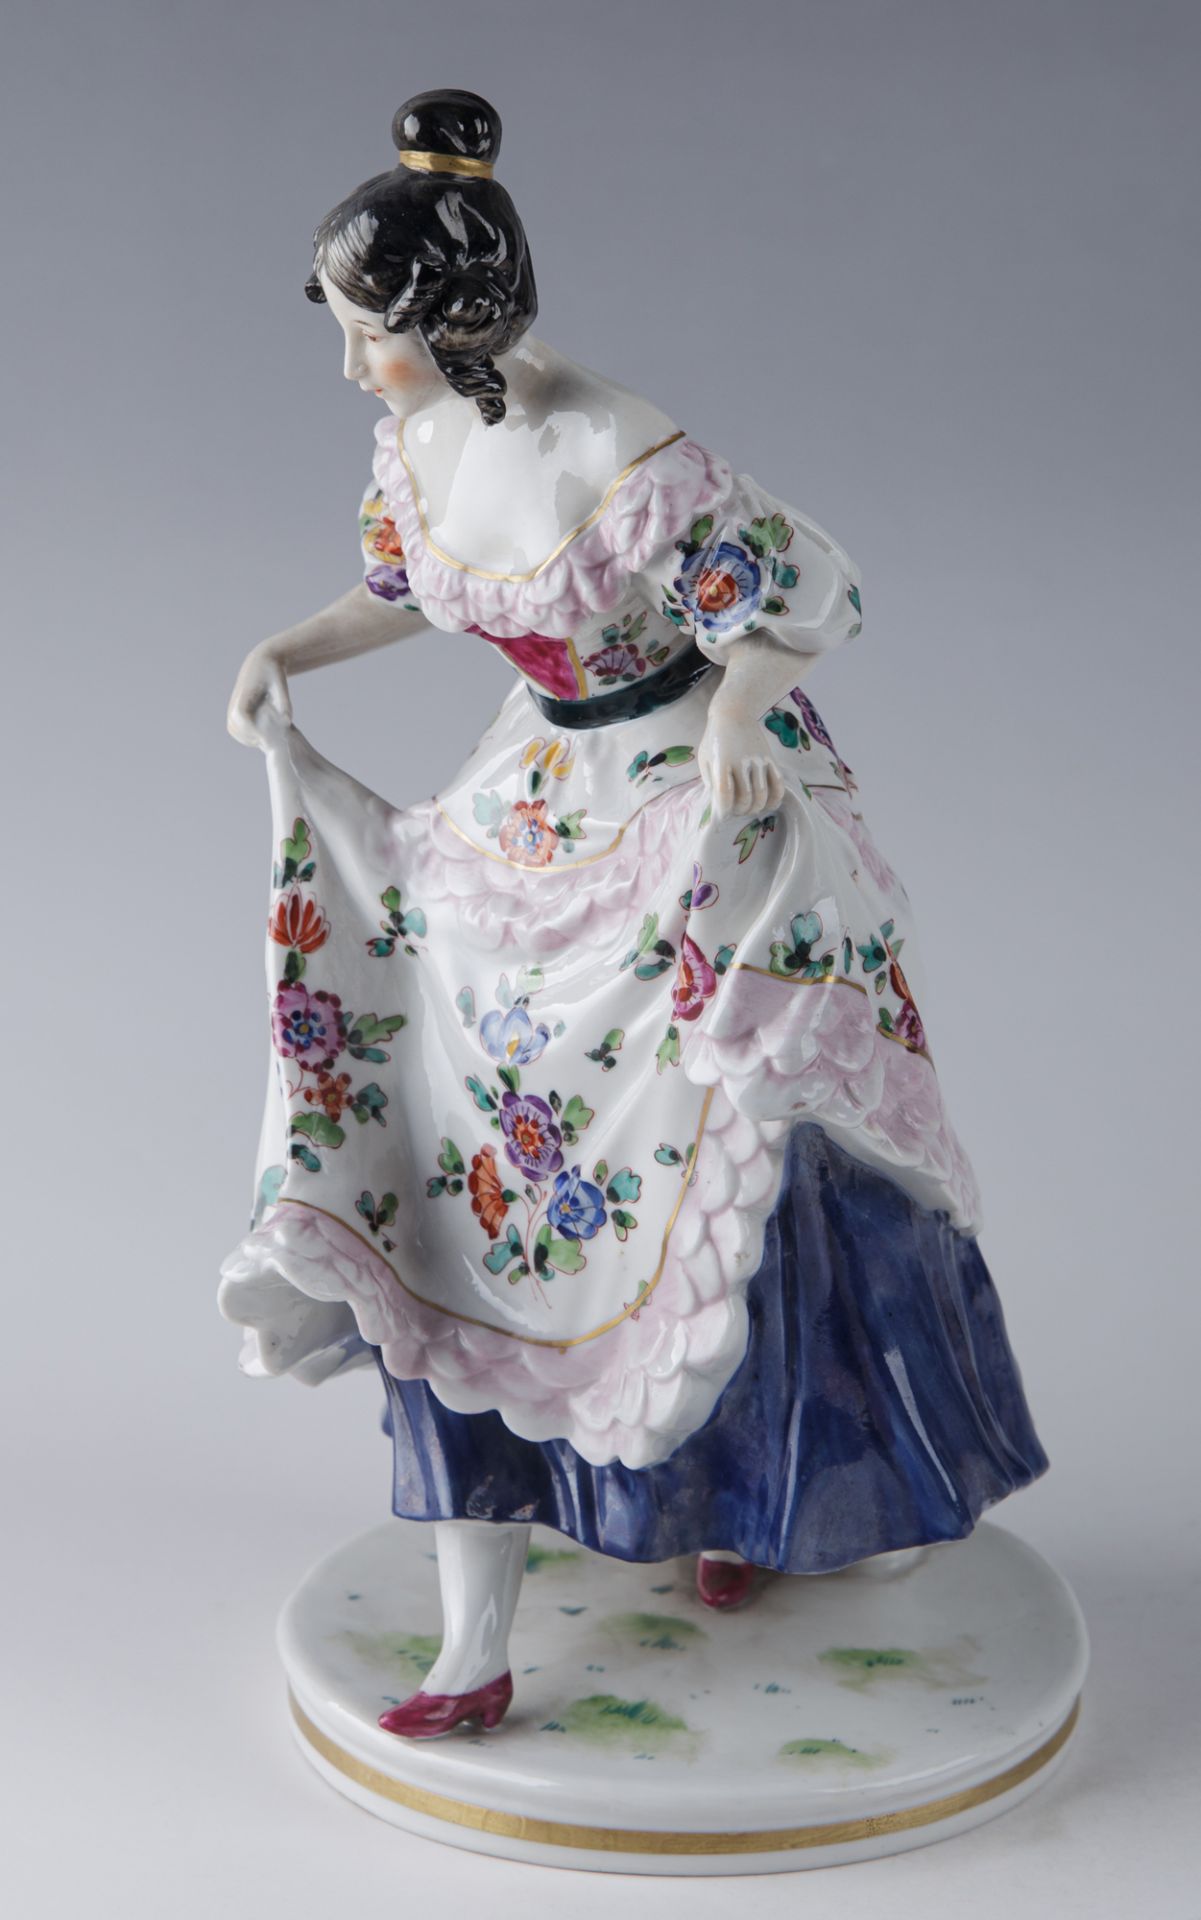 Ihr Kleid anhebende Tänzerin, Porzellanmanufaktur Ernst Bohne Söhne, Rudolstadt, 2. H. 19. Jh. - Image 2 of 5